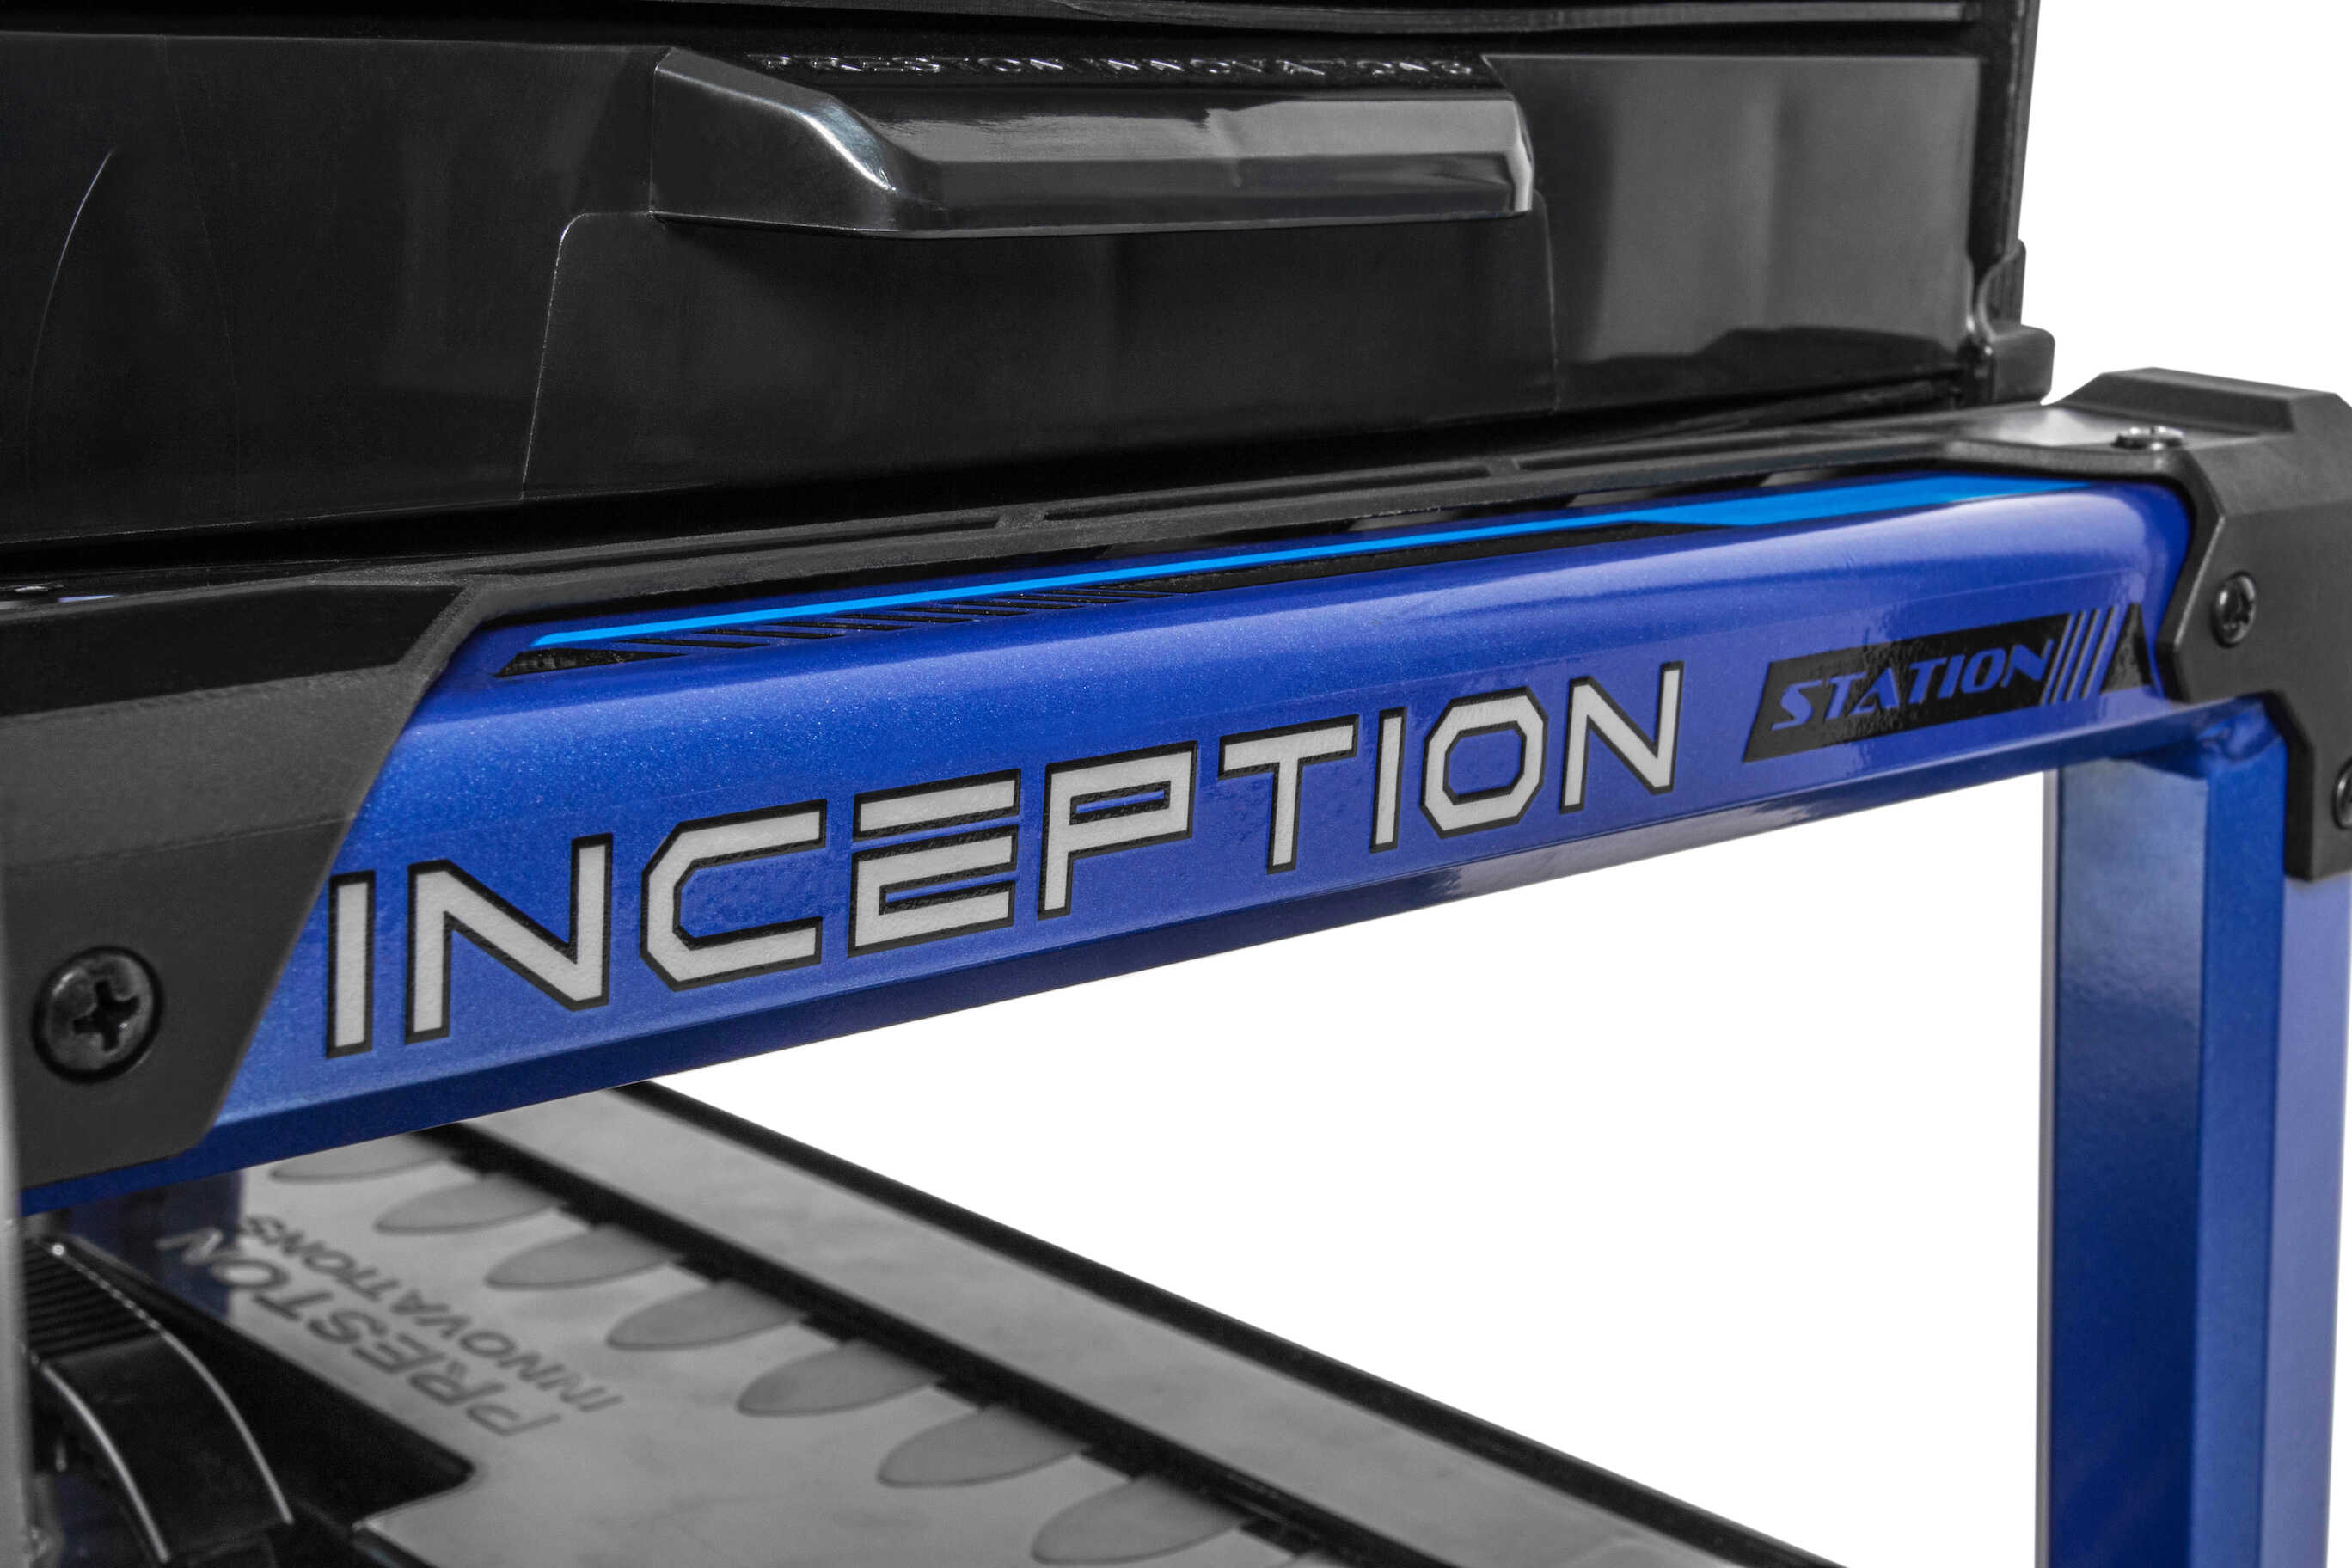 Seatbox Preston Inception Station - Blue Edition